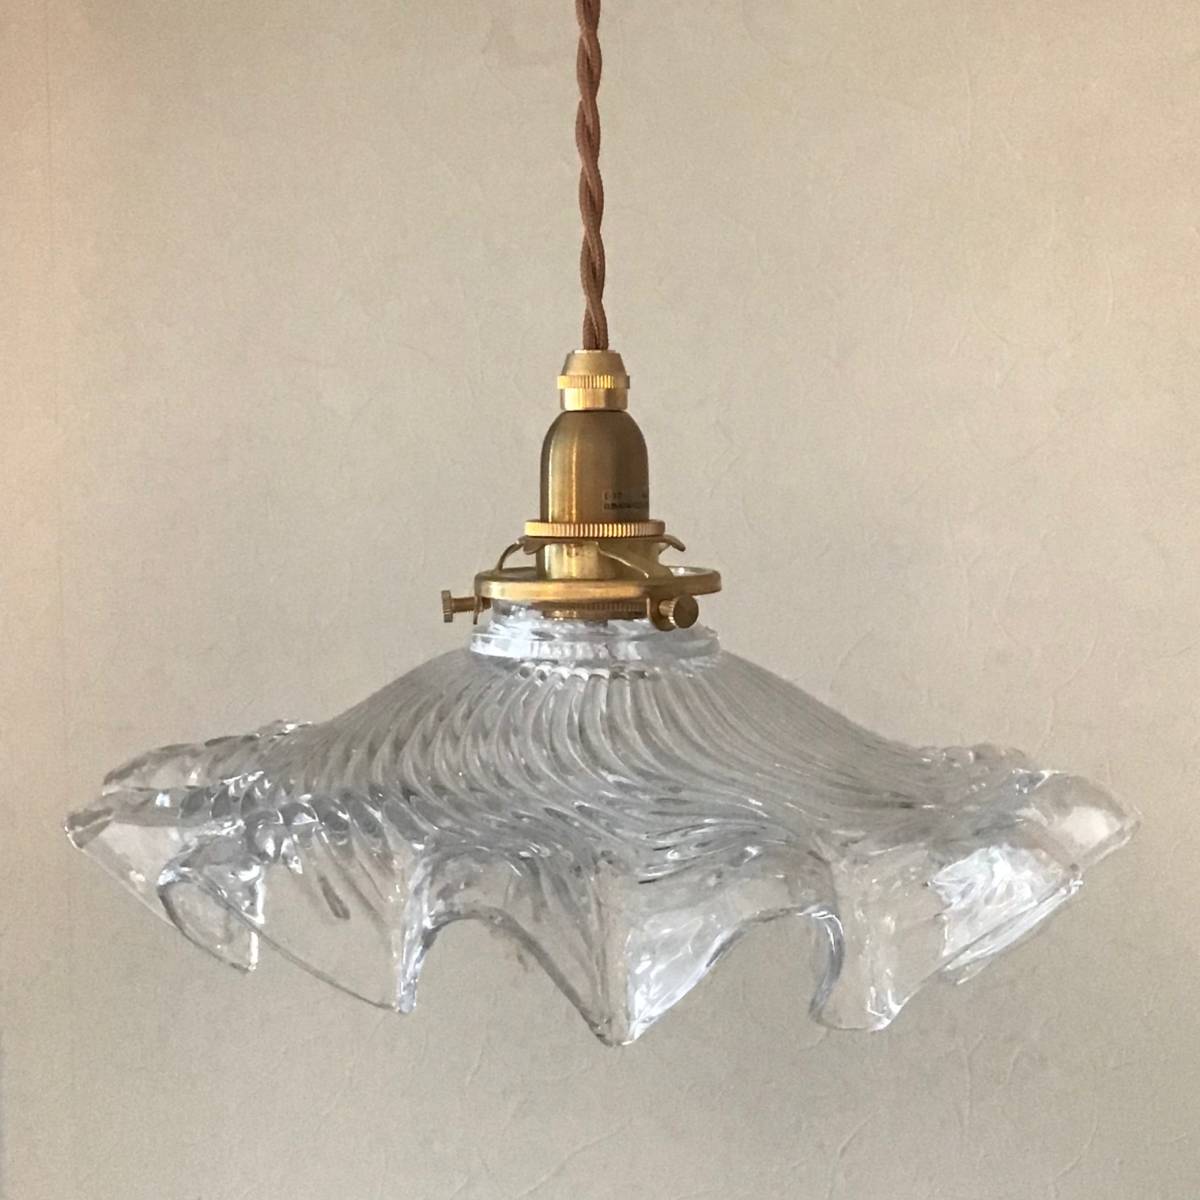 印象のデザイン 【Vintage】Clear Glass antique アンティーク イギリス UK 間接照明 シーリング 電気 照明 ライト クリアガラスランプ ヴィンテージ Lamp 照明